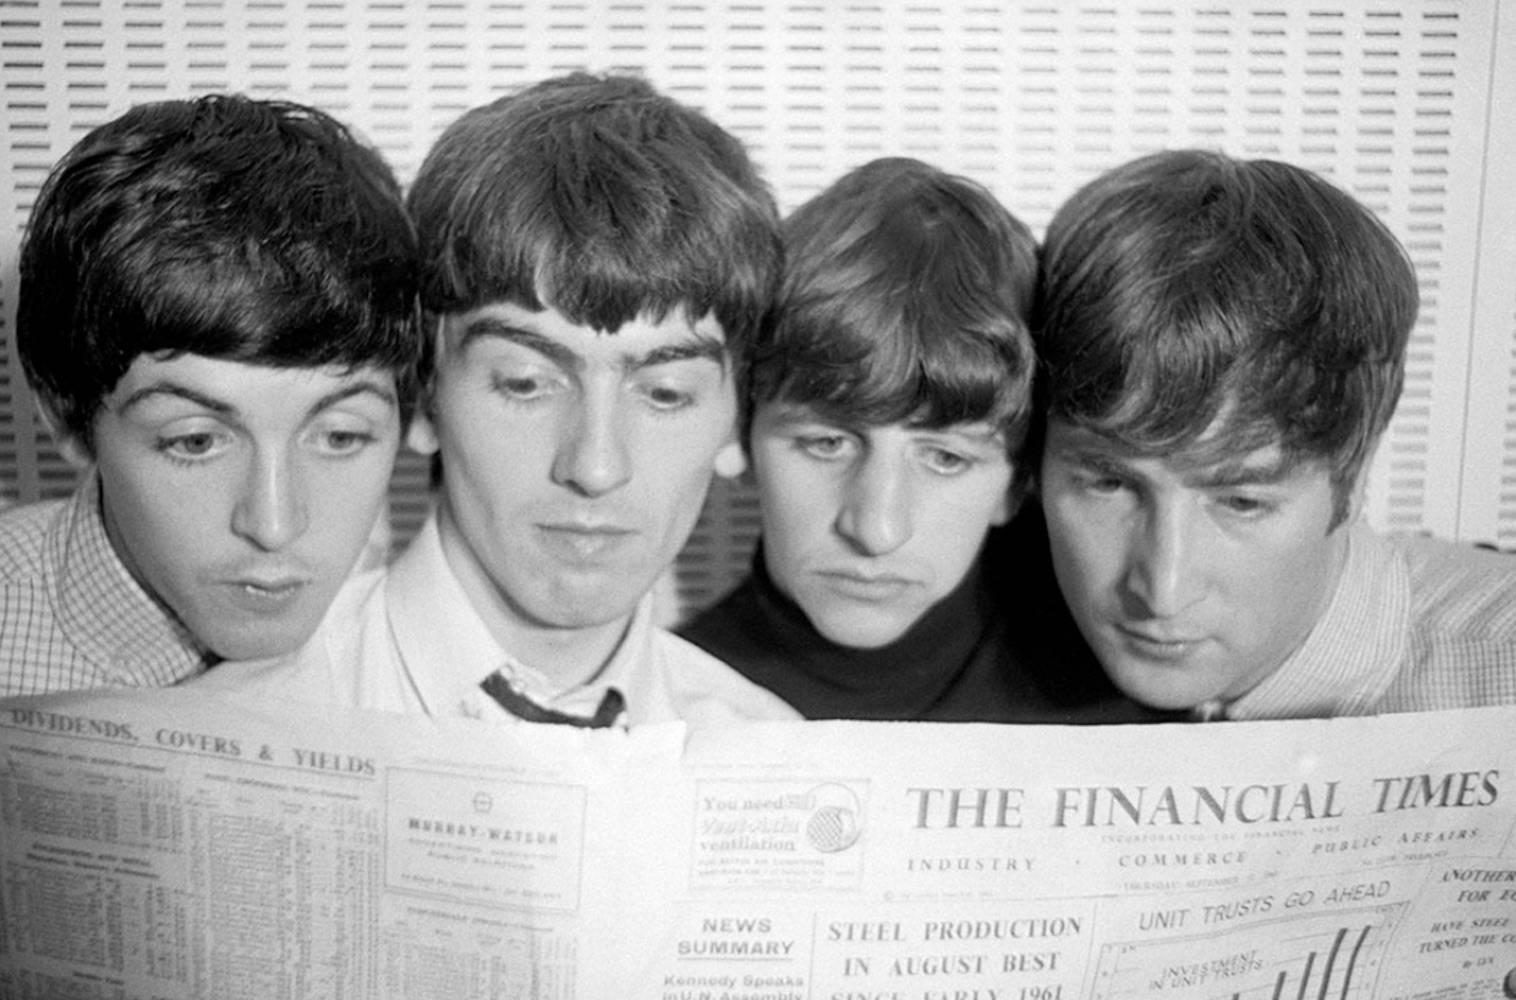 Norman Parkinson Portrait Photograph - The Beatles, Russel Square 1963